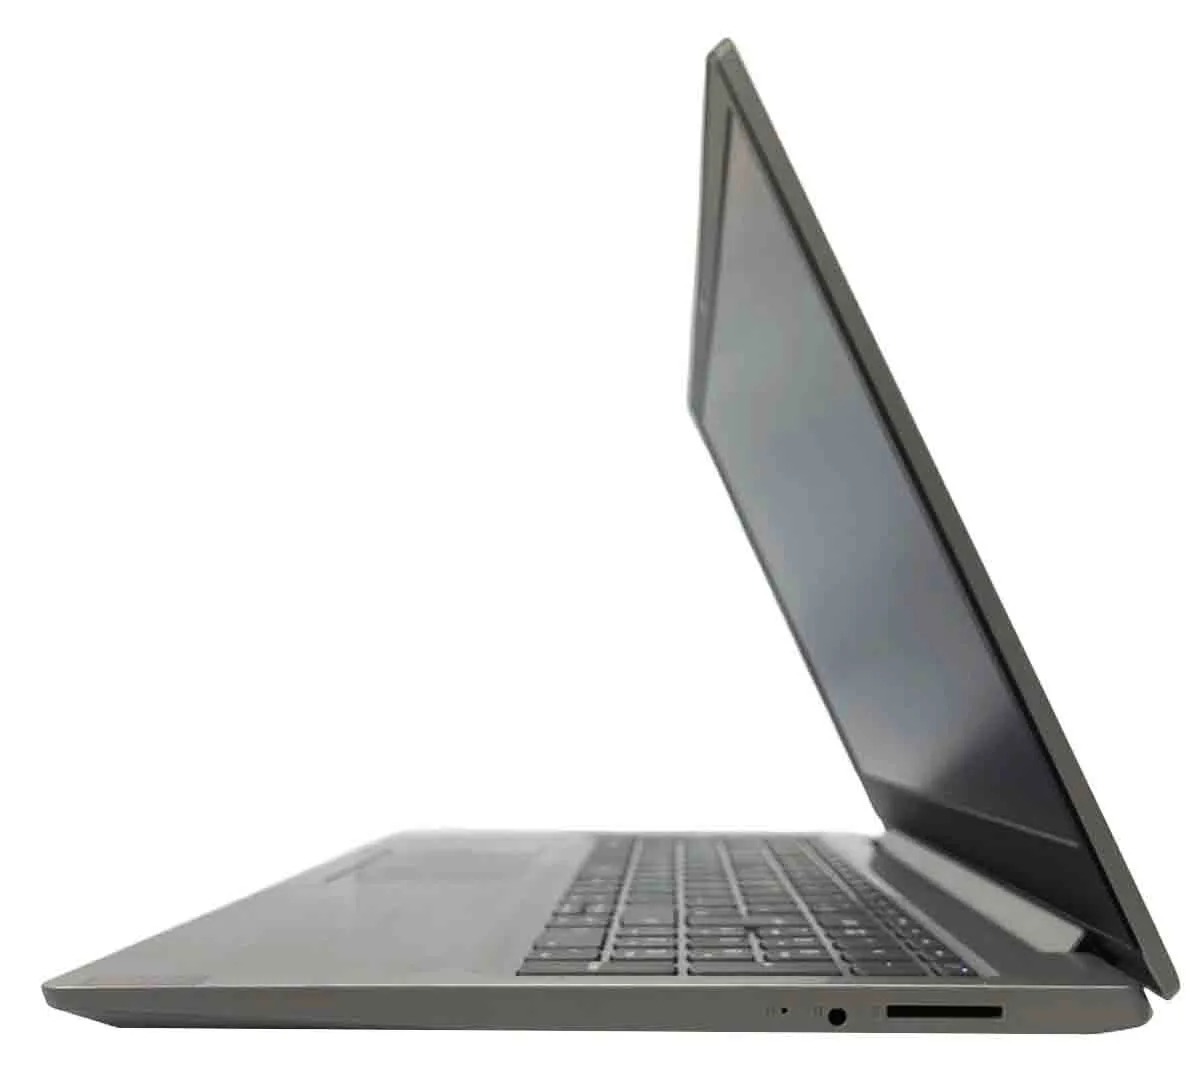 Notebook Lenovo Ideapad S145, Tela 15.6